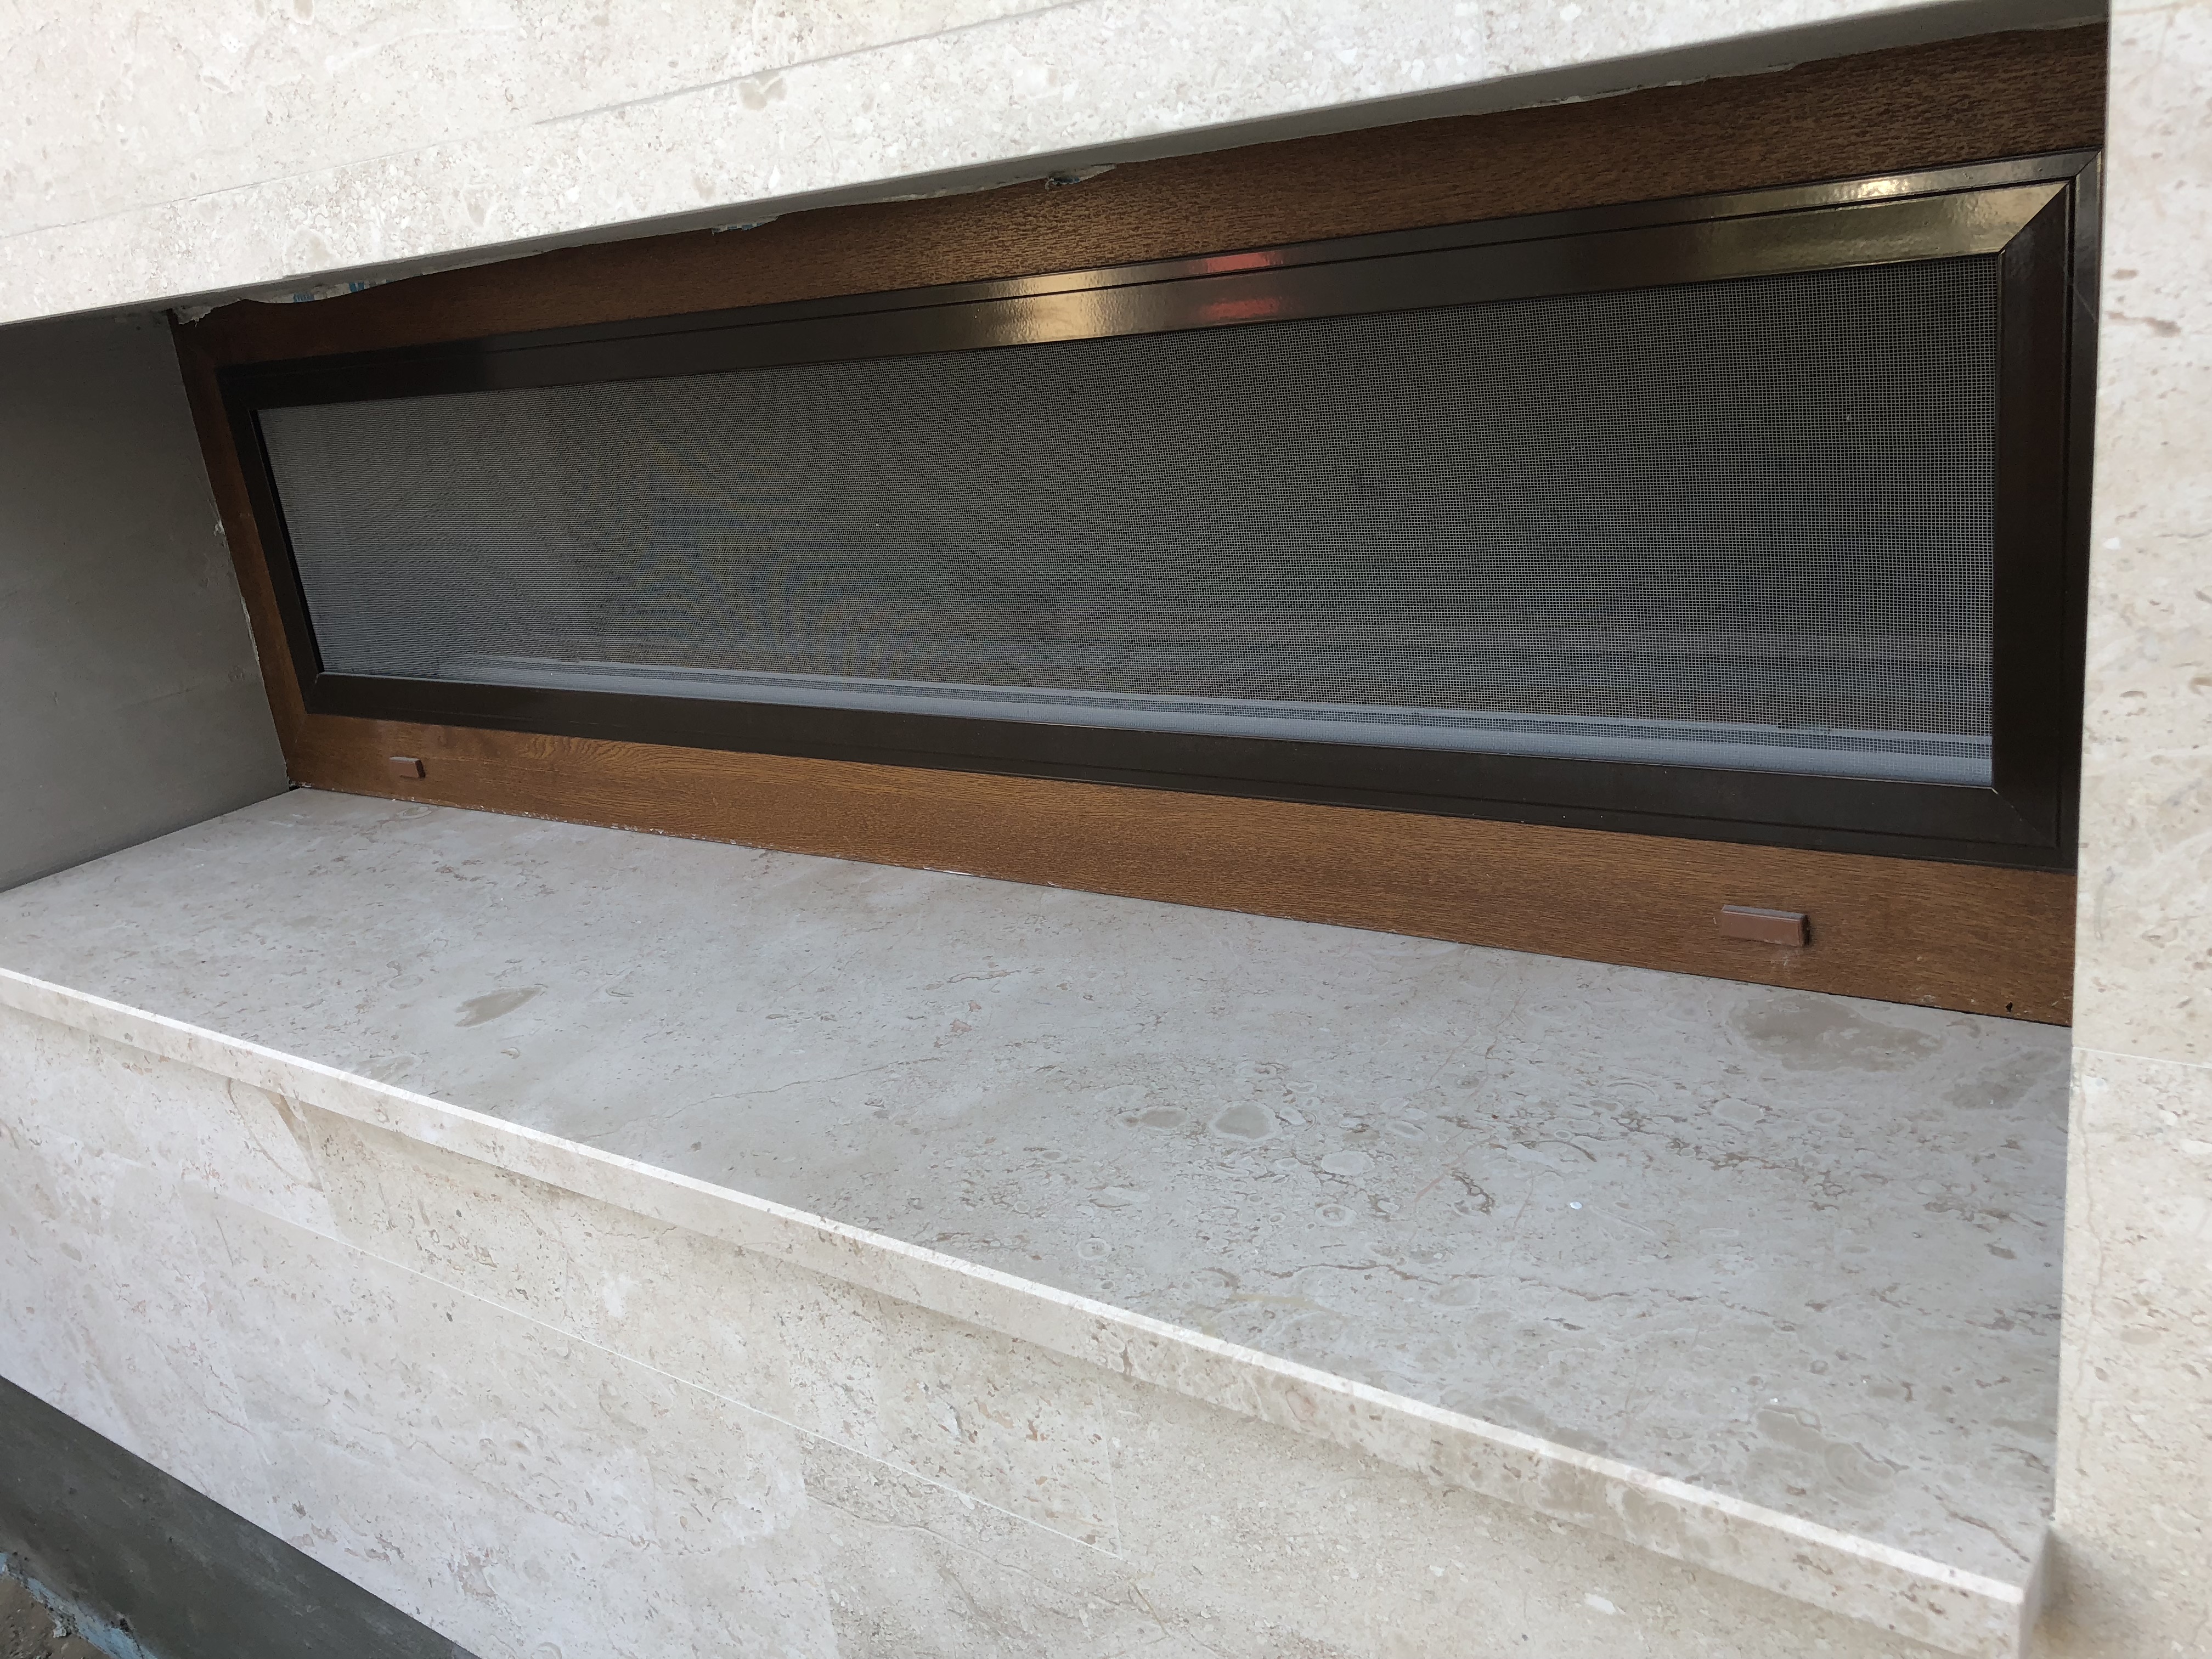 Breccia Sarda Mészkő ablakpárkány x3cm vastagság, fényes felülettel, teljes megmunkálással, vízorral ellátva